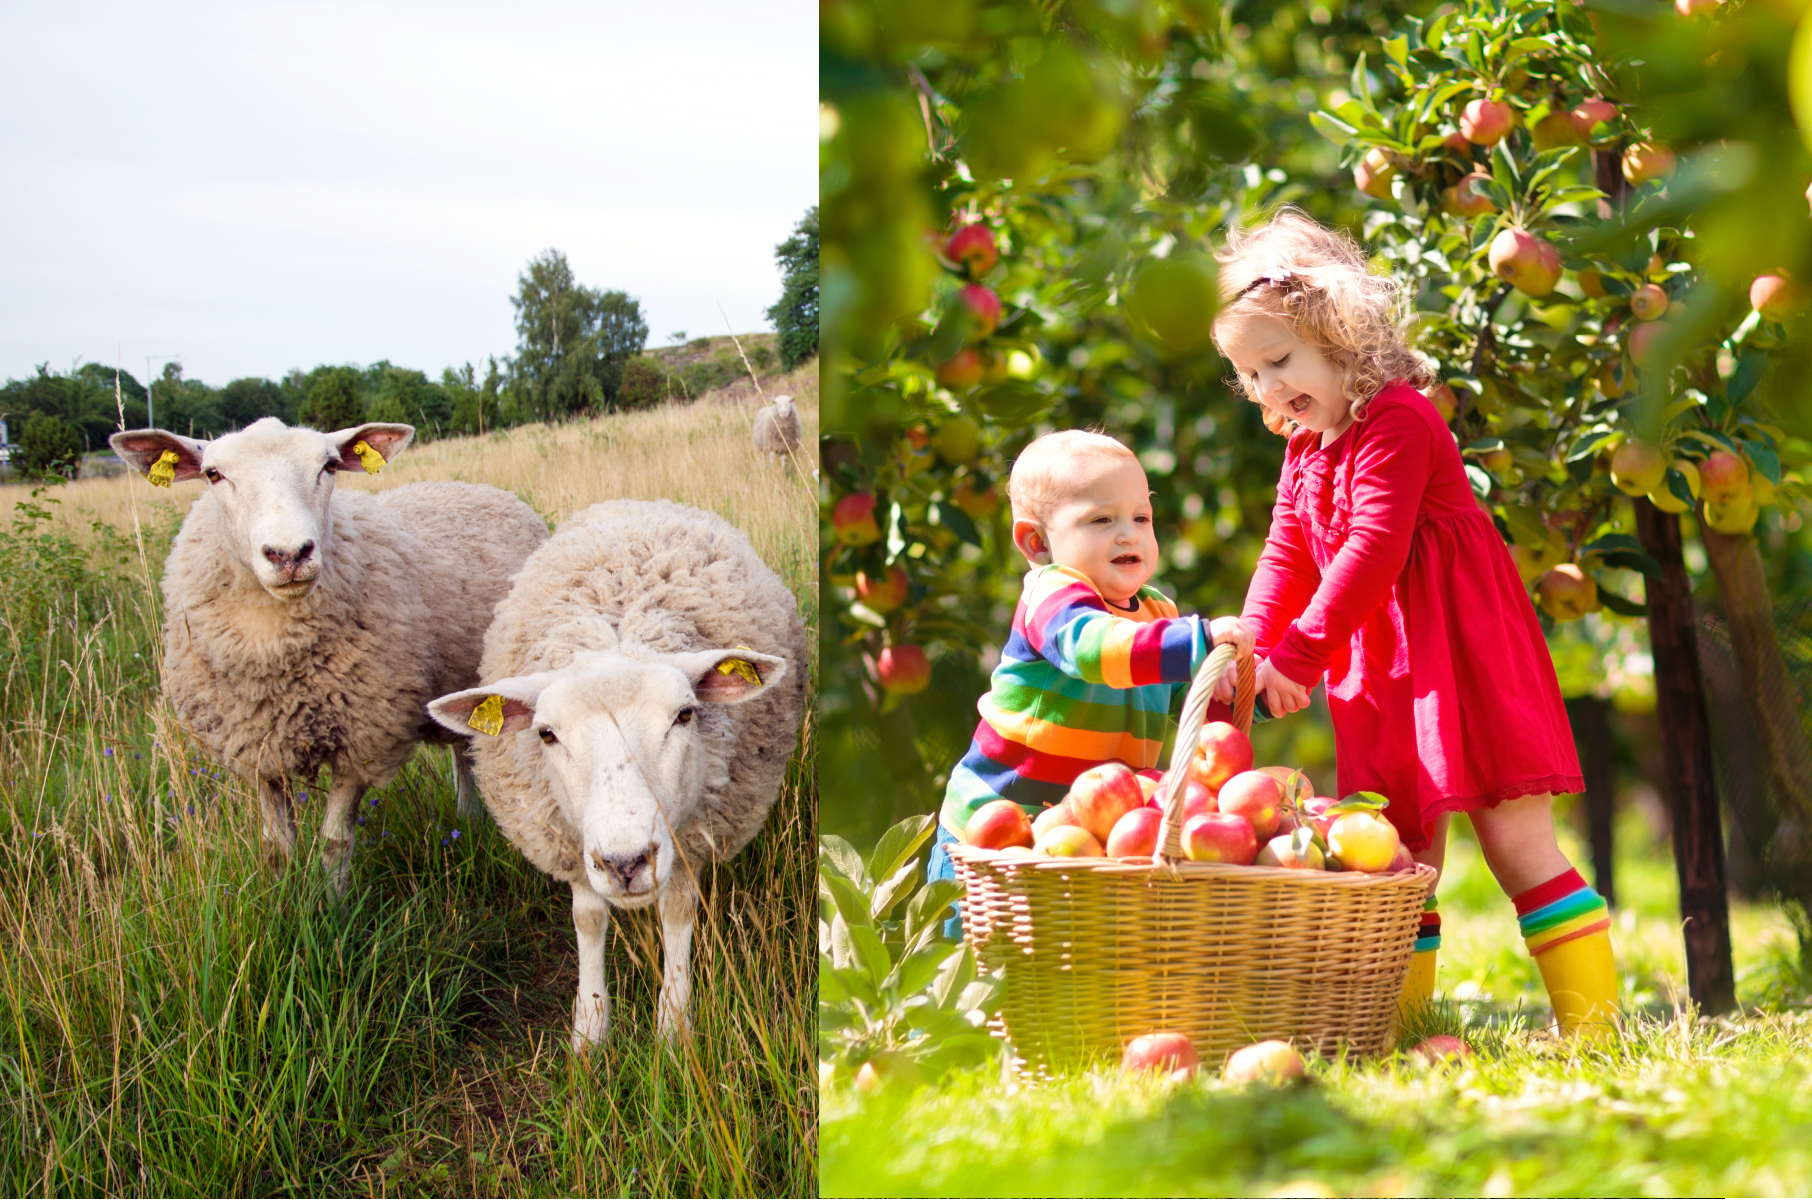 Ett montage av två bilder. Till vänster är två nyfikna får. Till höger ses två små barn intill en välfylld korg med nyplockade äpplen.